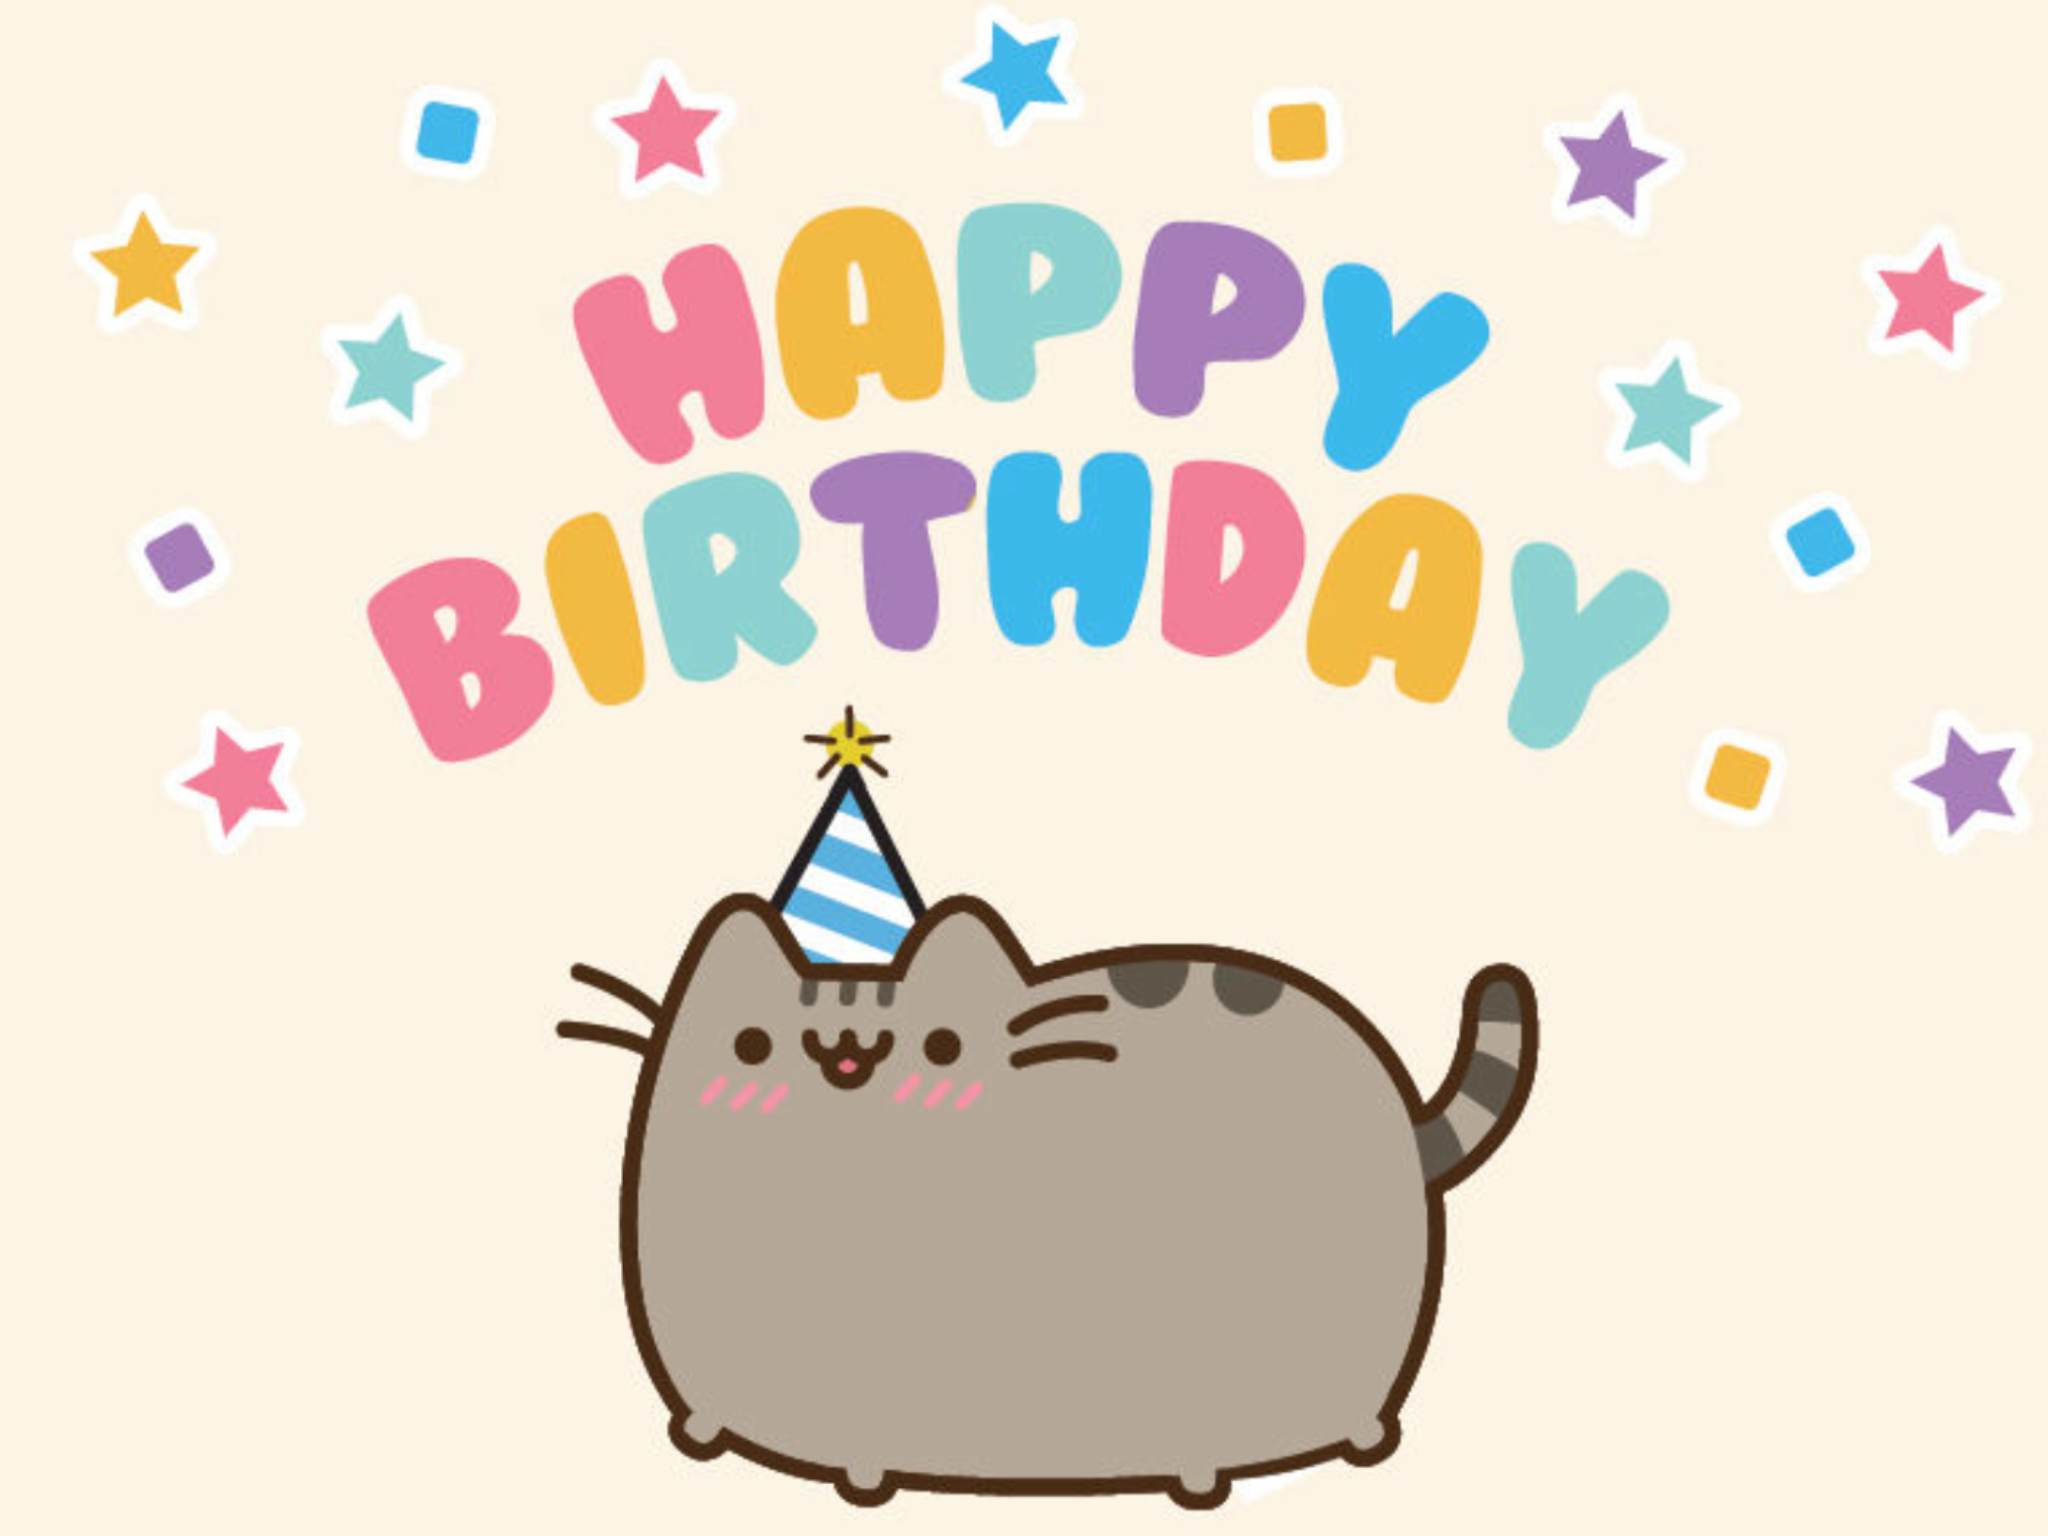 Journaling. Pusheen happy birthday, Happy birthday cat, Pusheen birthday